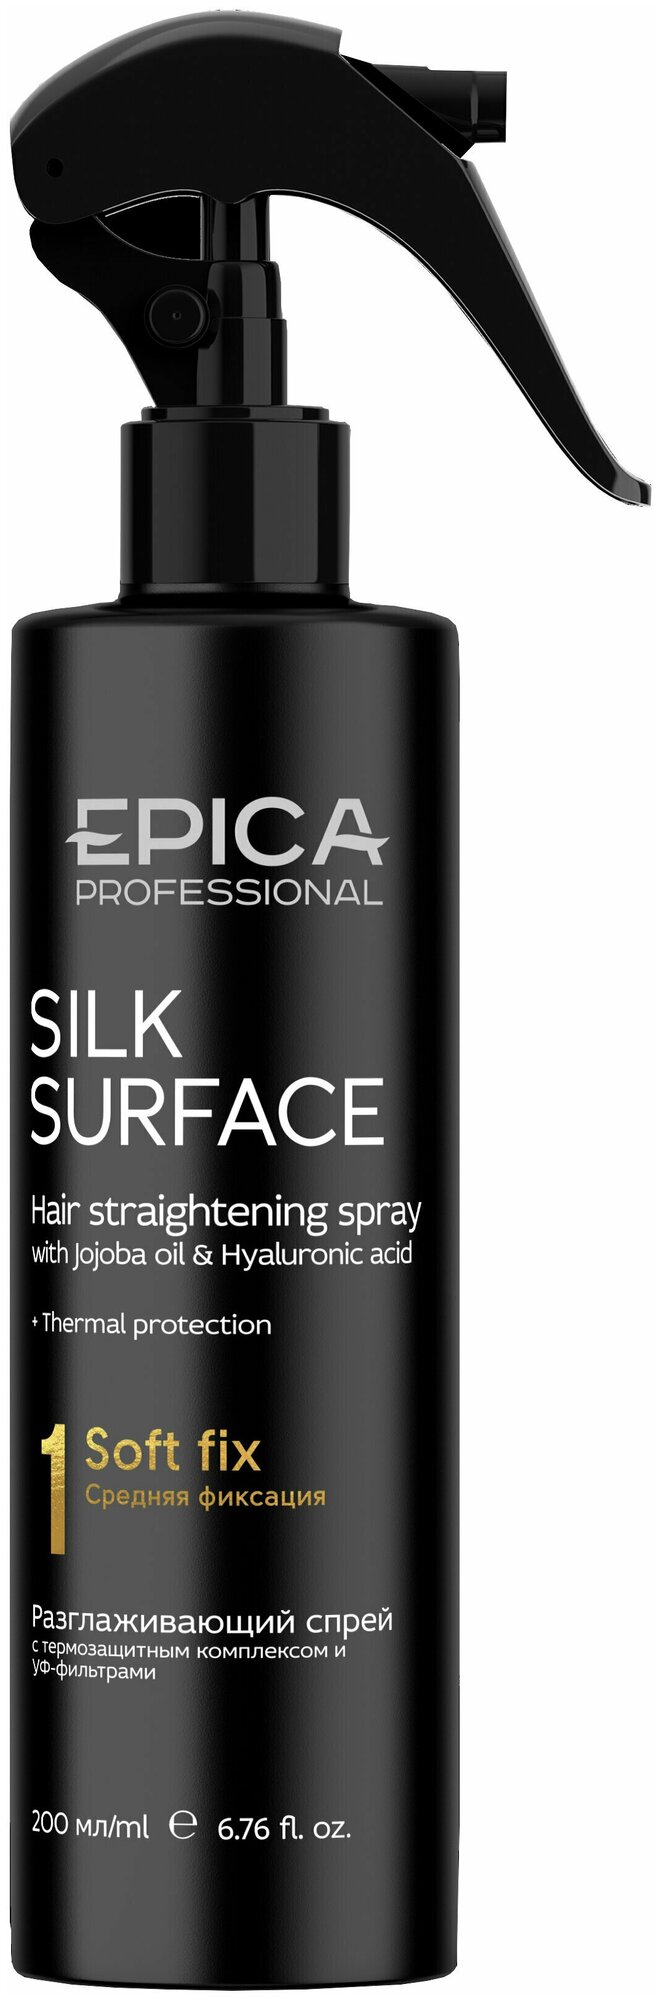 EPICA Professional Silk Surface Спрей разглаживающий д/волос с термозащитным комплексом 200 мл.